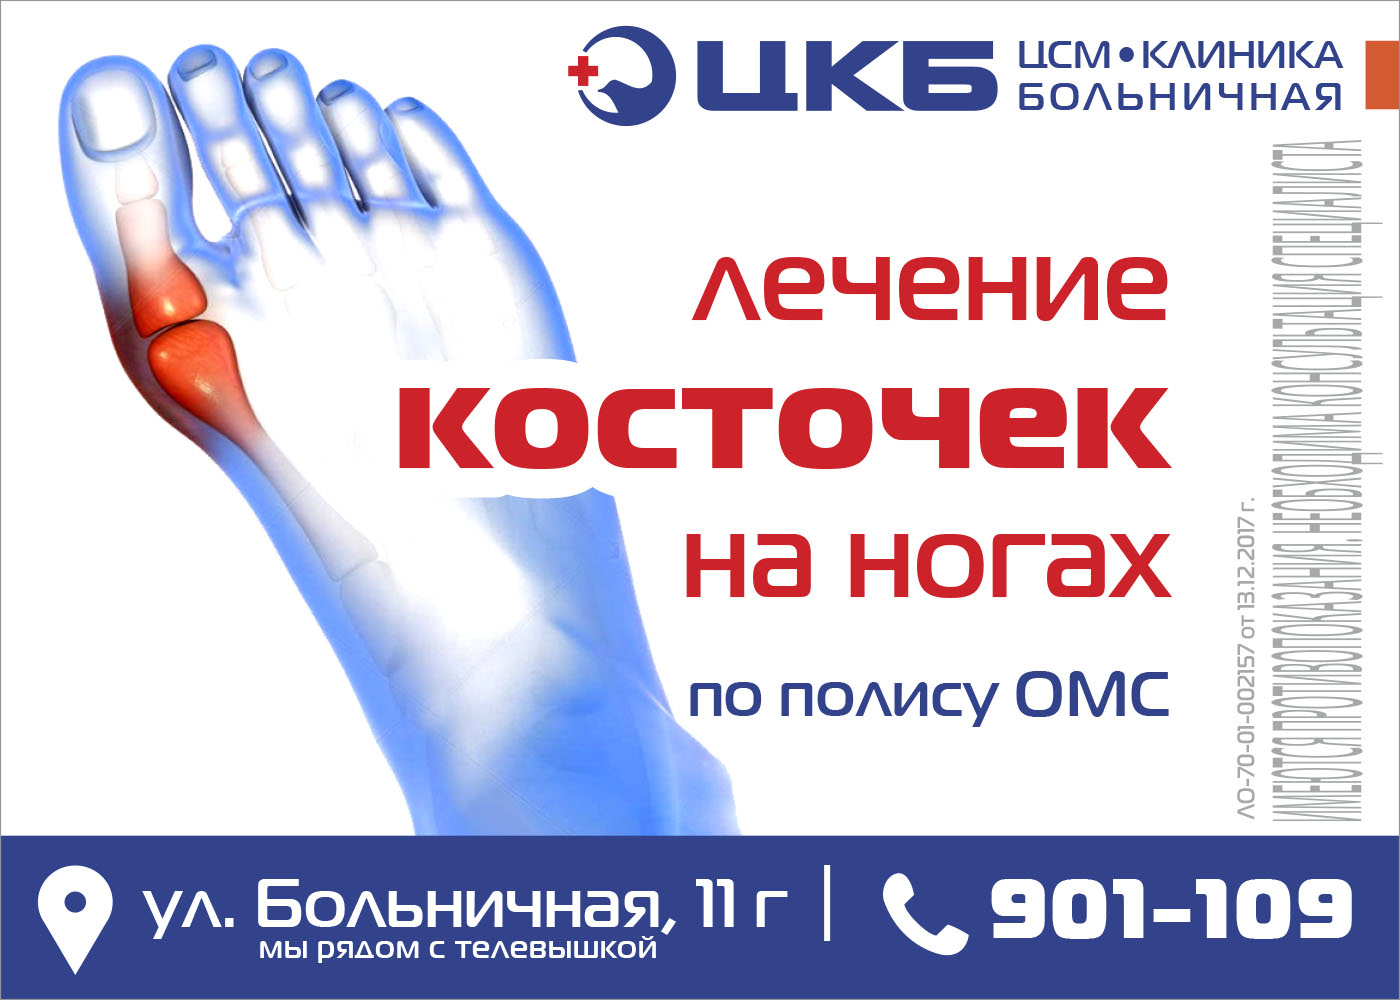 Операция по омс отзывы. Операция косточек на ногах по ОМС. Удалить косточку на ноге в Москве по полису ОМС. Удаление косточки на ноге по полису ОМС. Удаление косточек на ногах в Москве по полису ОМС.